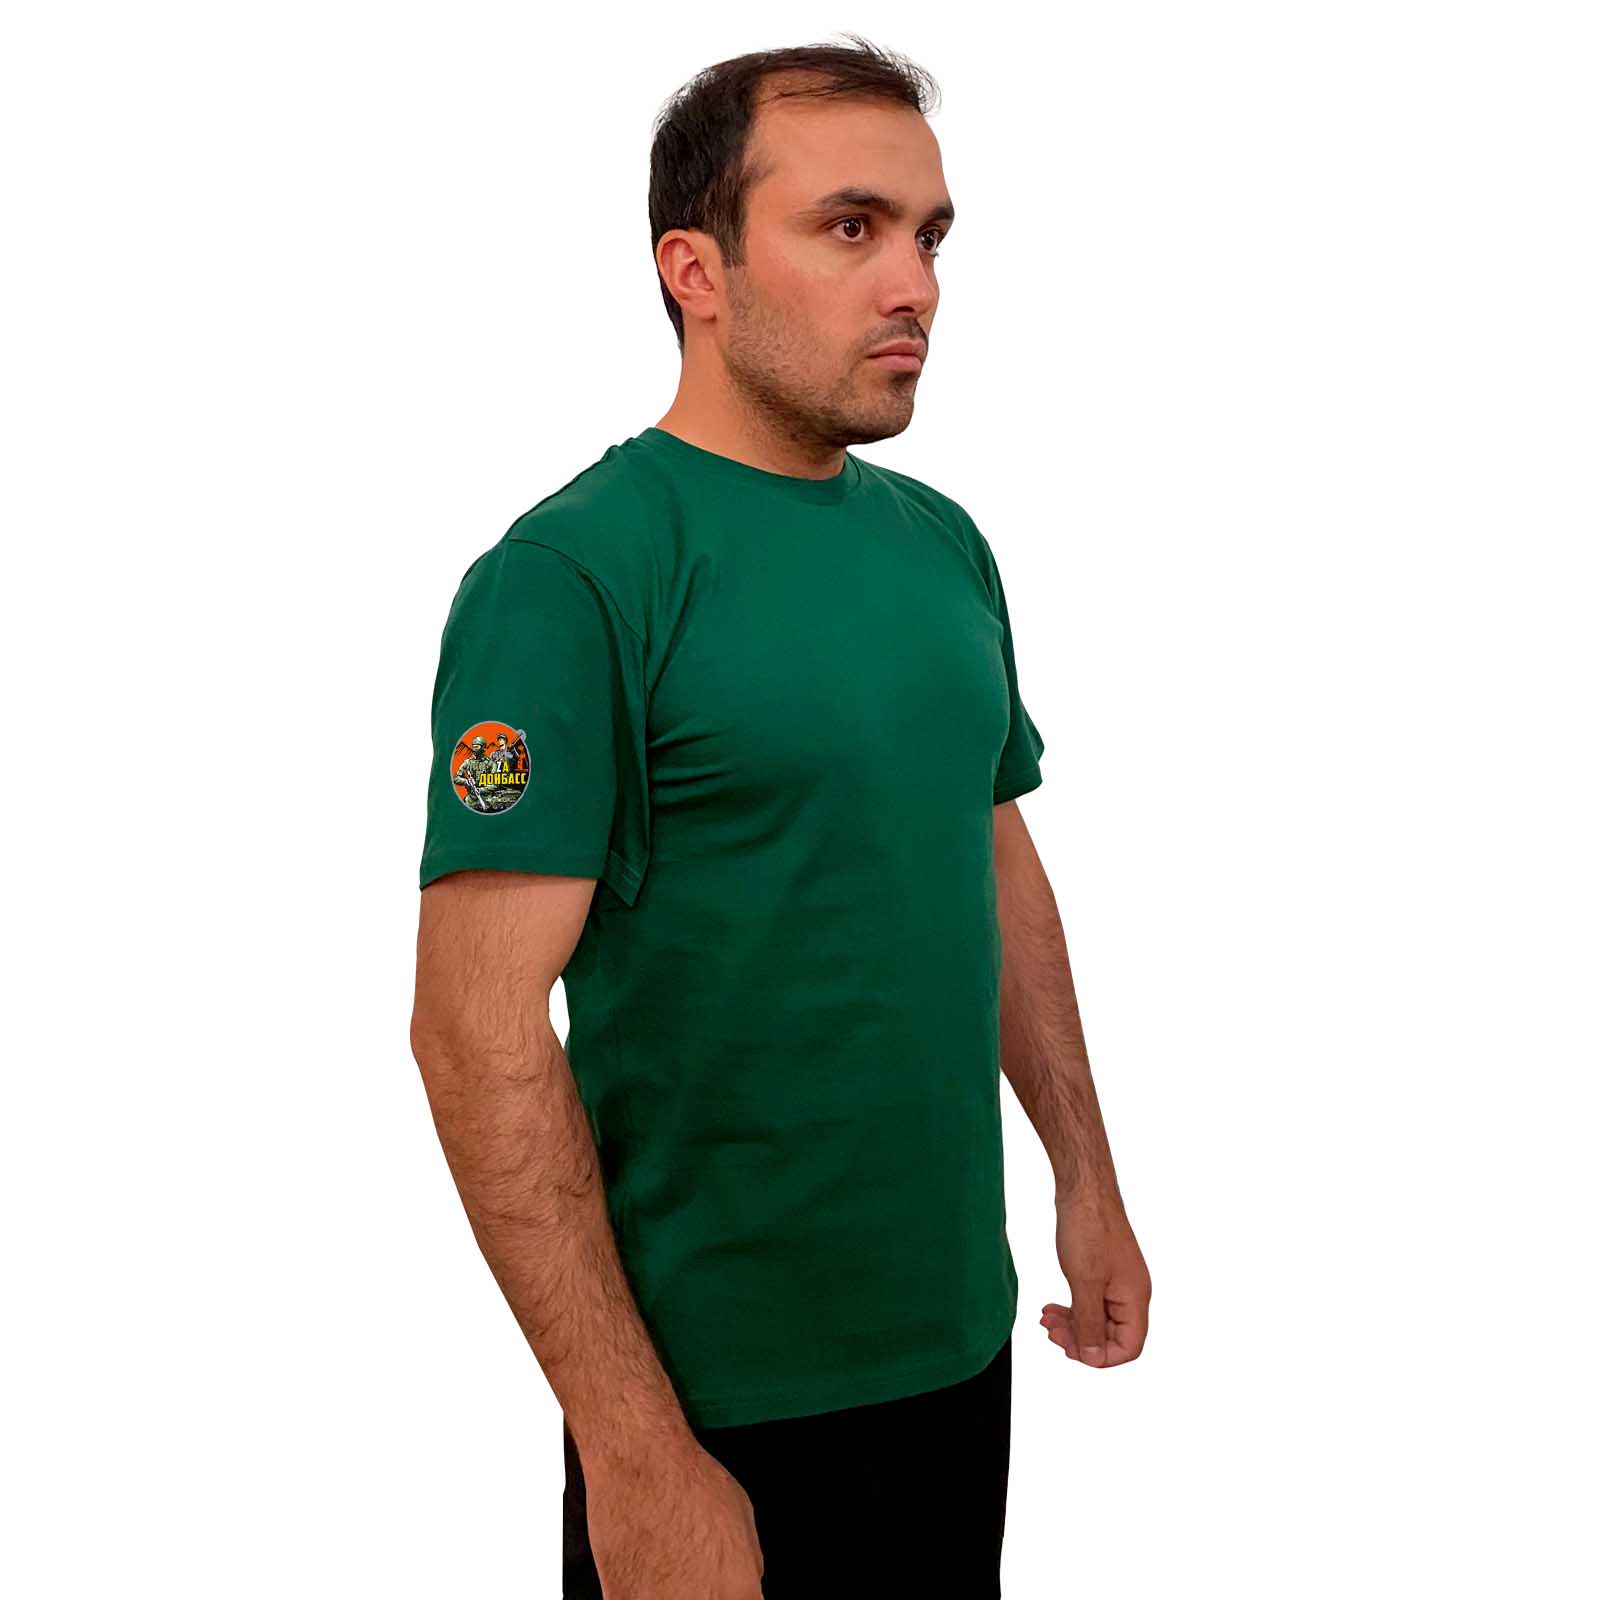 Зелёная футболка с термопринтом "Zа Донбасс" на рукаве